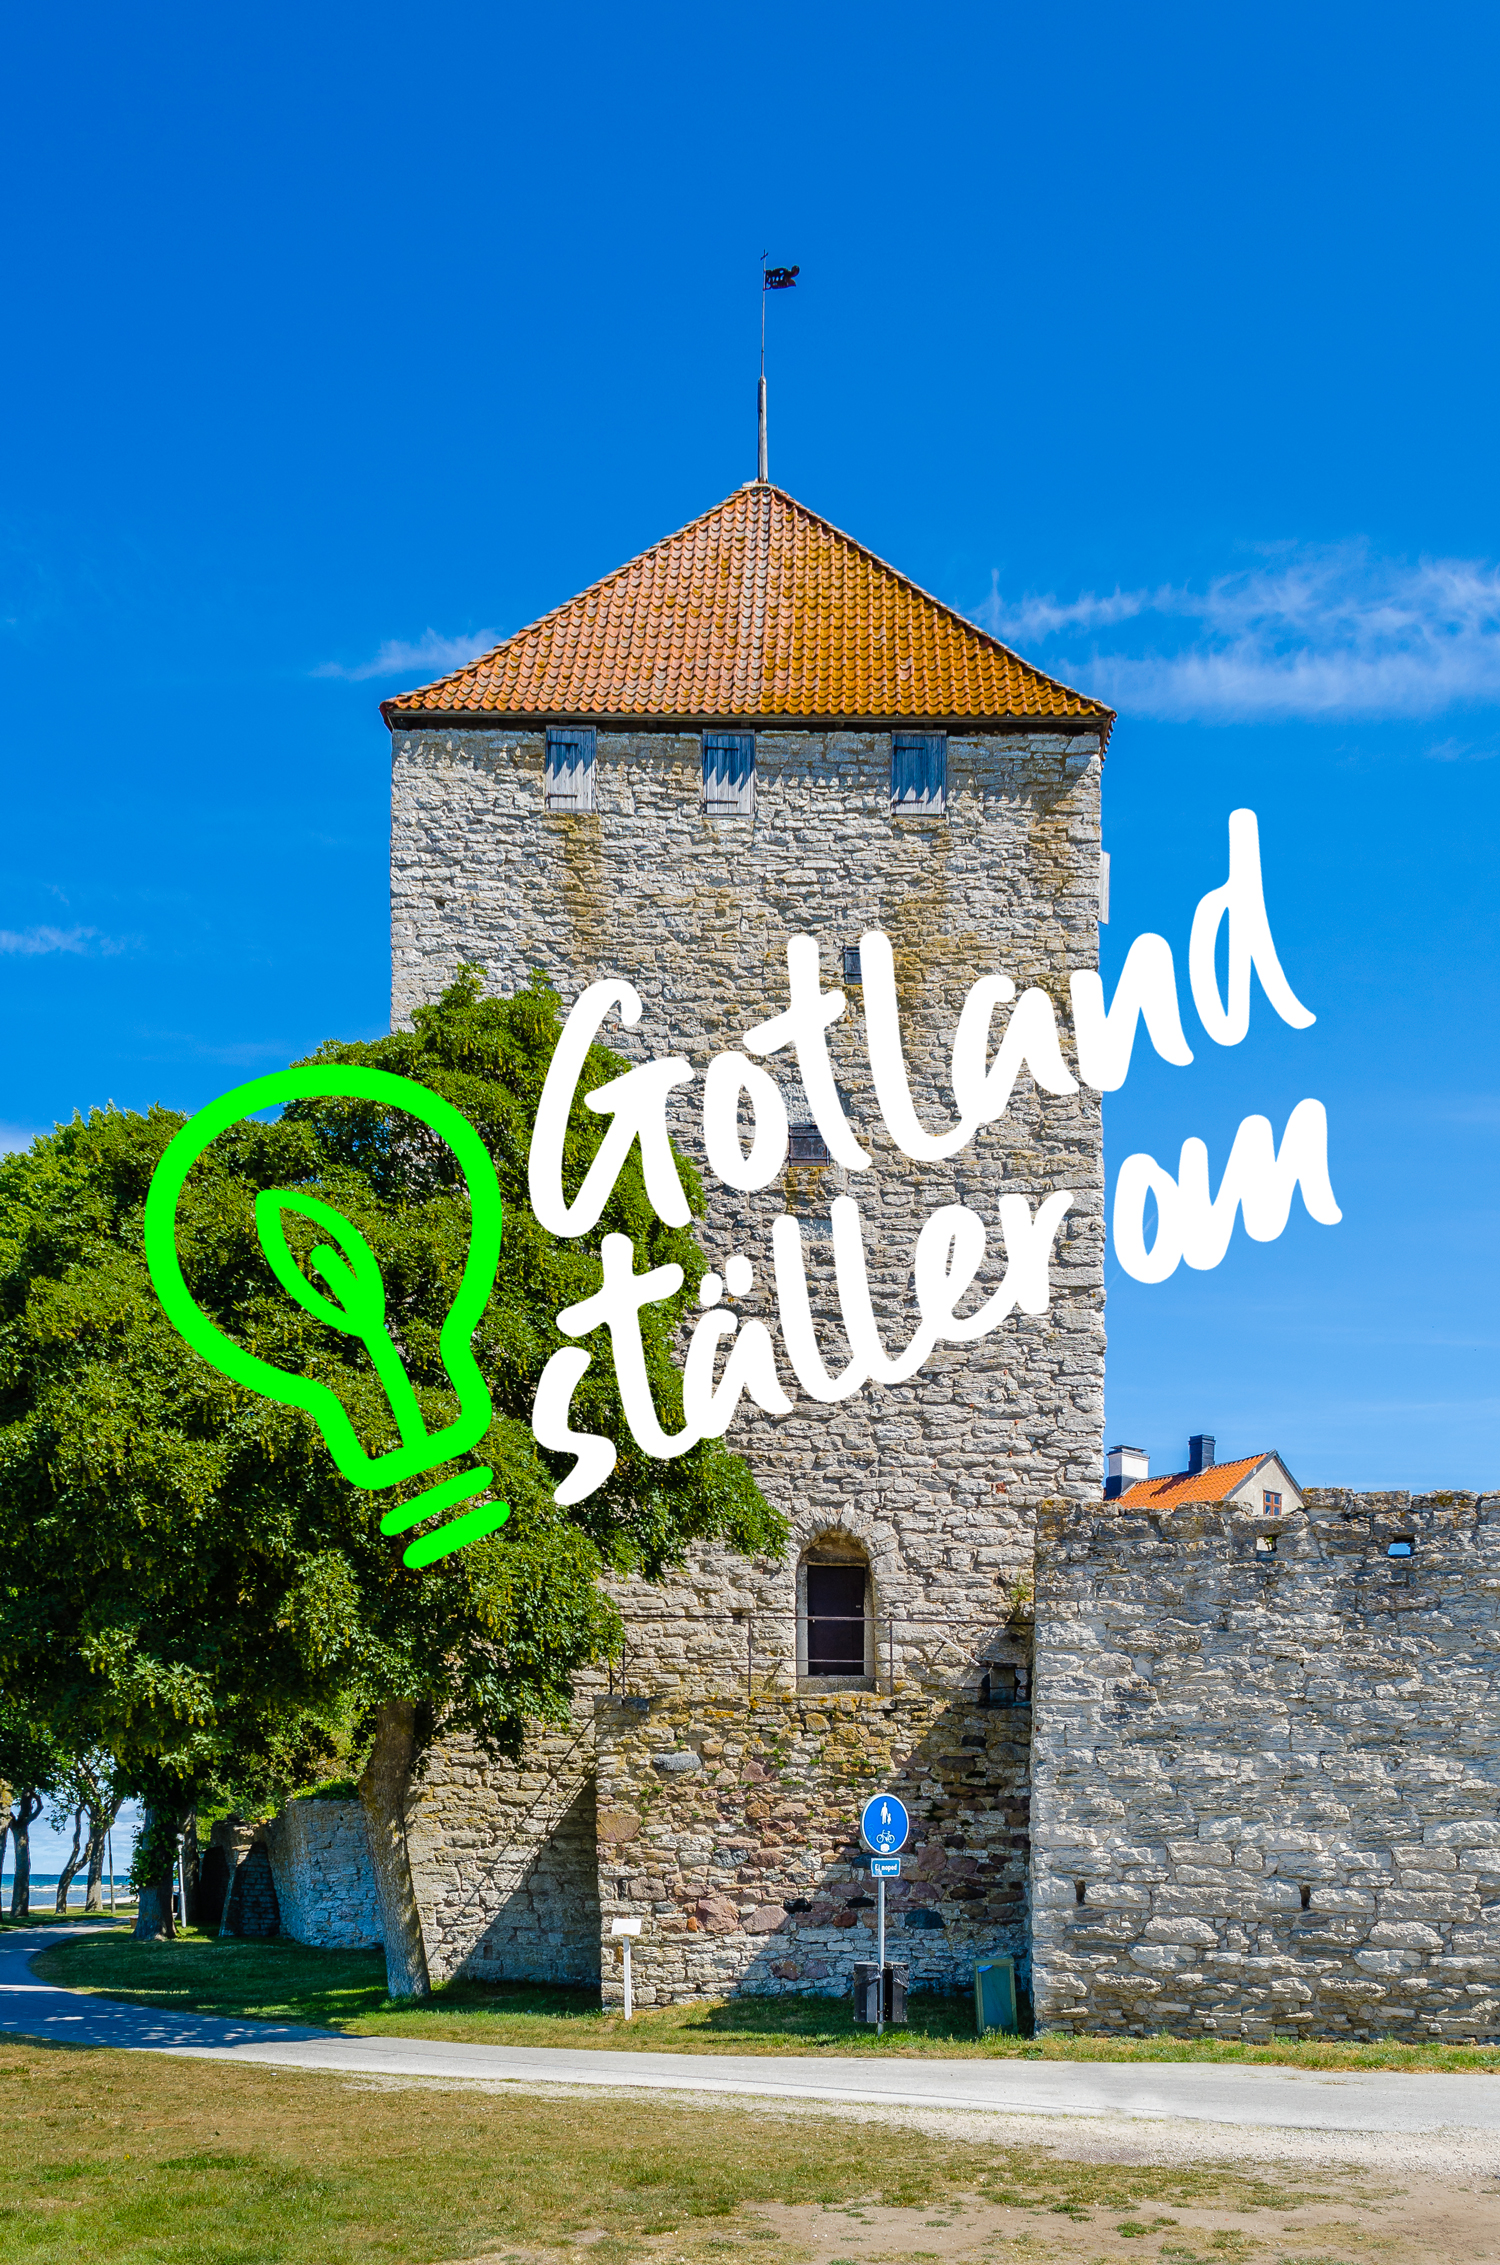 Kruttornet Visby Logo Gotland ställer om med illustratiion av grön glödlampa